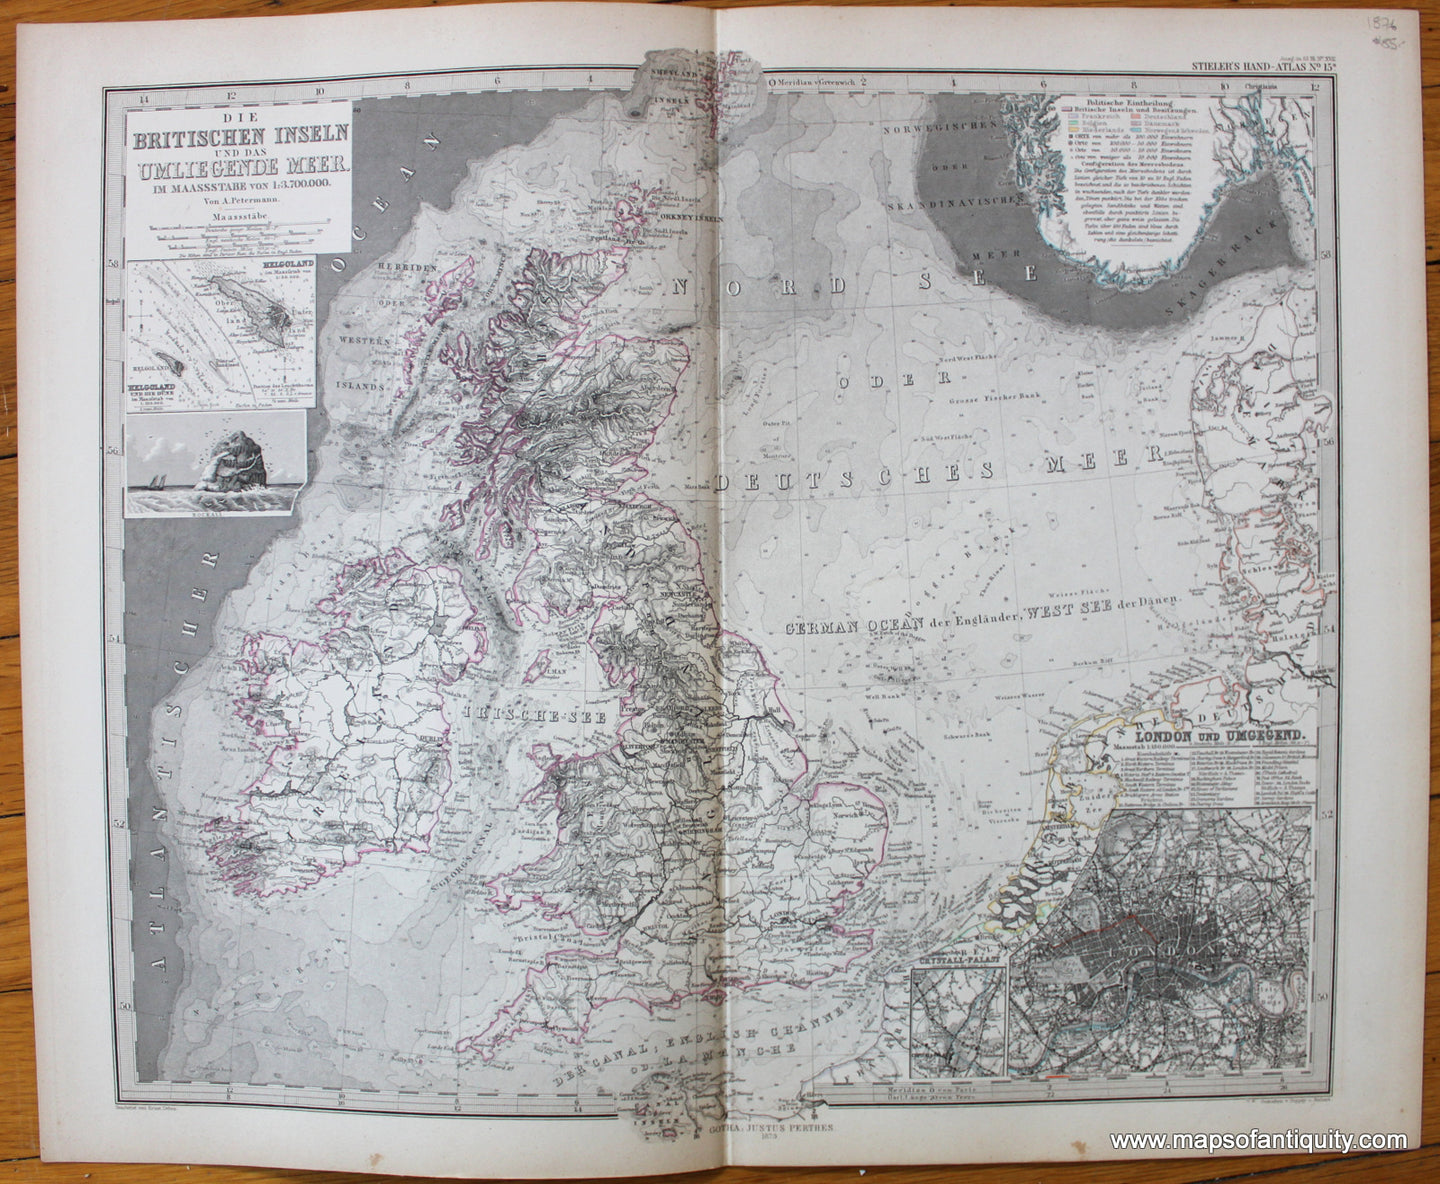 Antique-Map-Britischen-inseln-umliegende-meer-British-Isles-England-Wales-Scotland-Ireland-United-Kingdom-Stieler-1876-1870s-1800s-19th-century-Maps-of-Antiquity